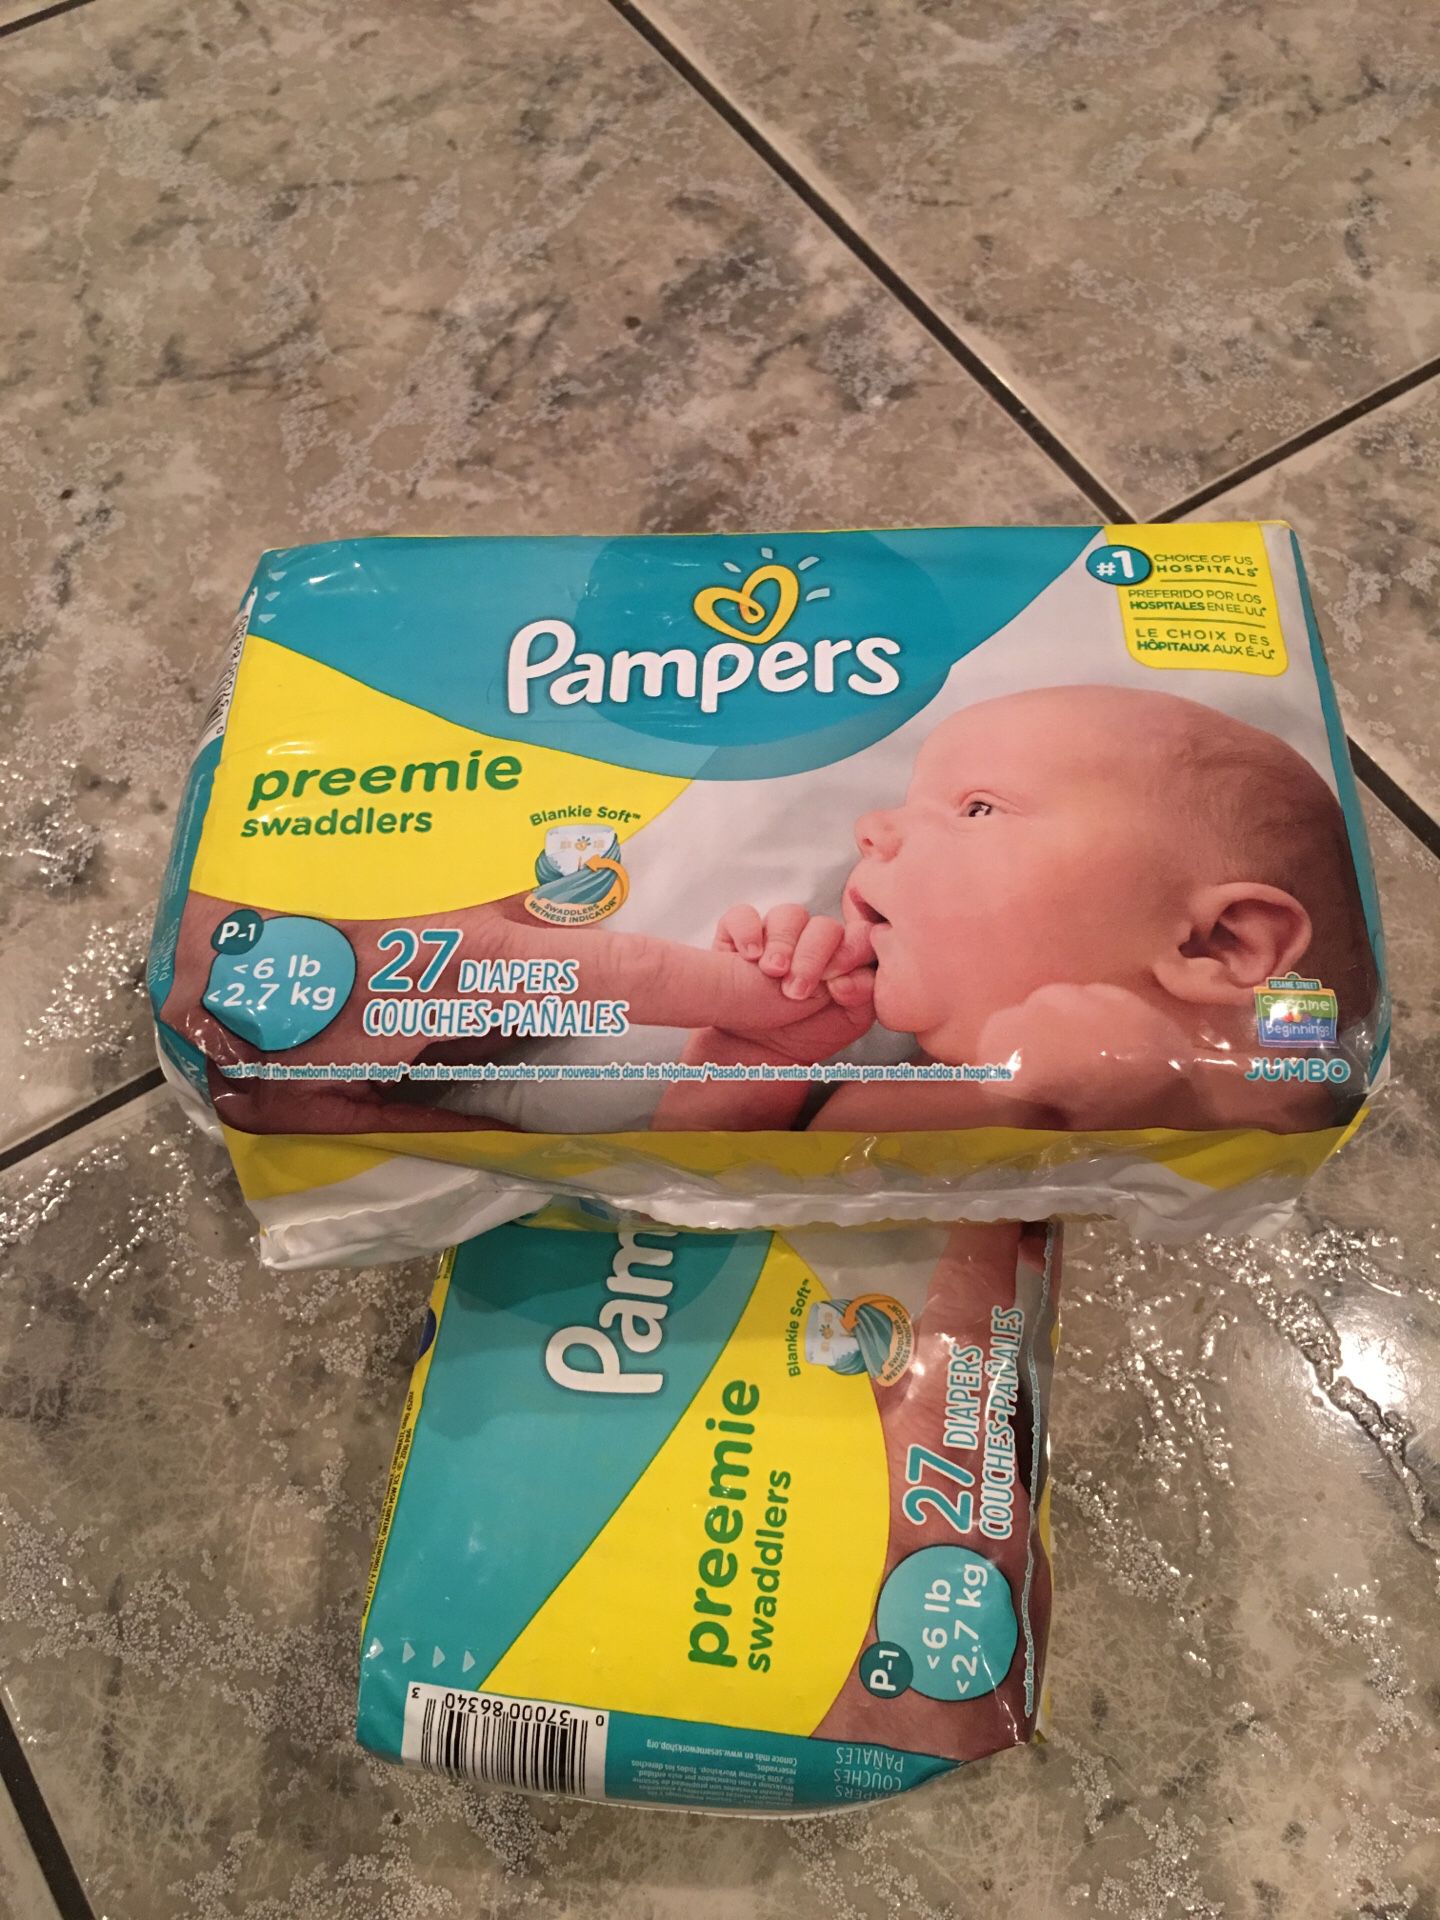 Pampers preemie diapers